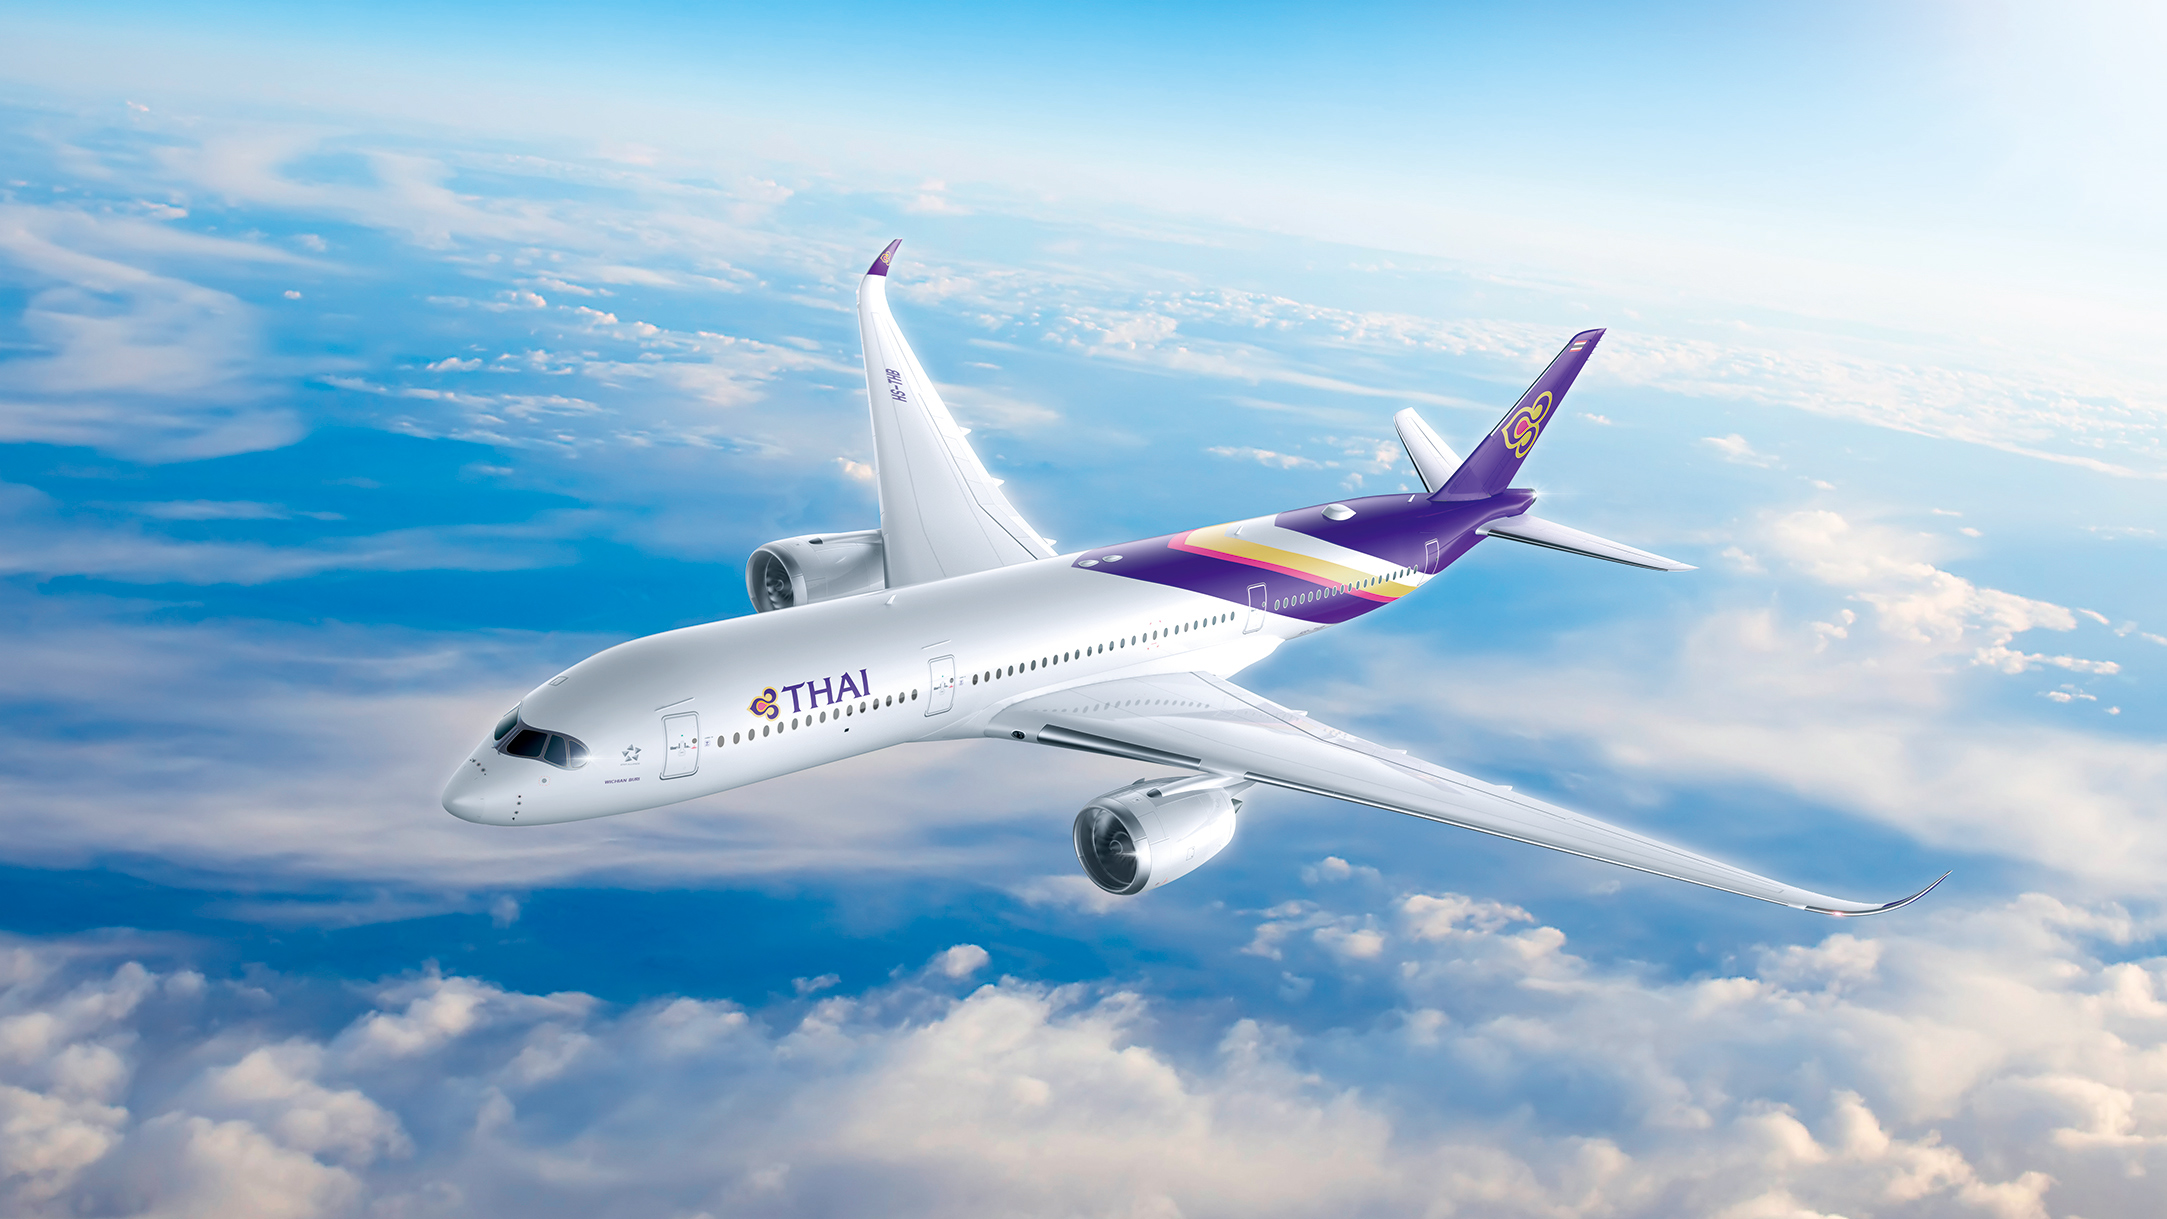 タイ国際航空 タイムセール運賃の販売開始5月5日以降のご出発で バンコク往復33 000円に タイ国際航空のプレスリリース